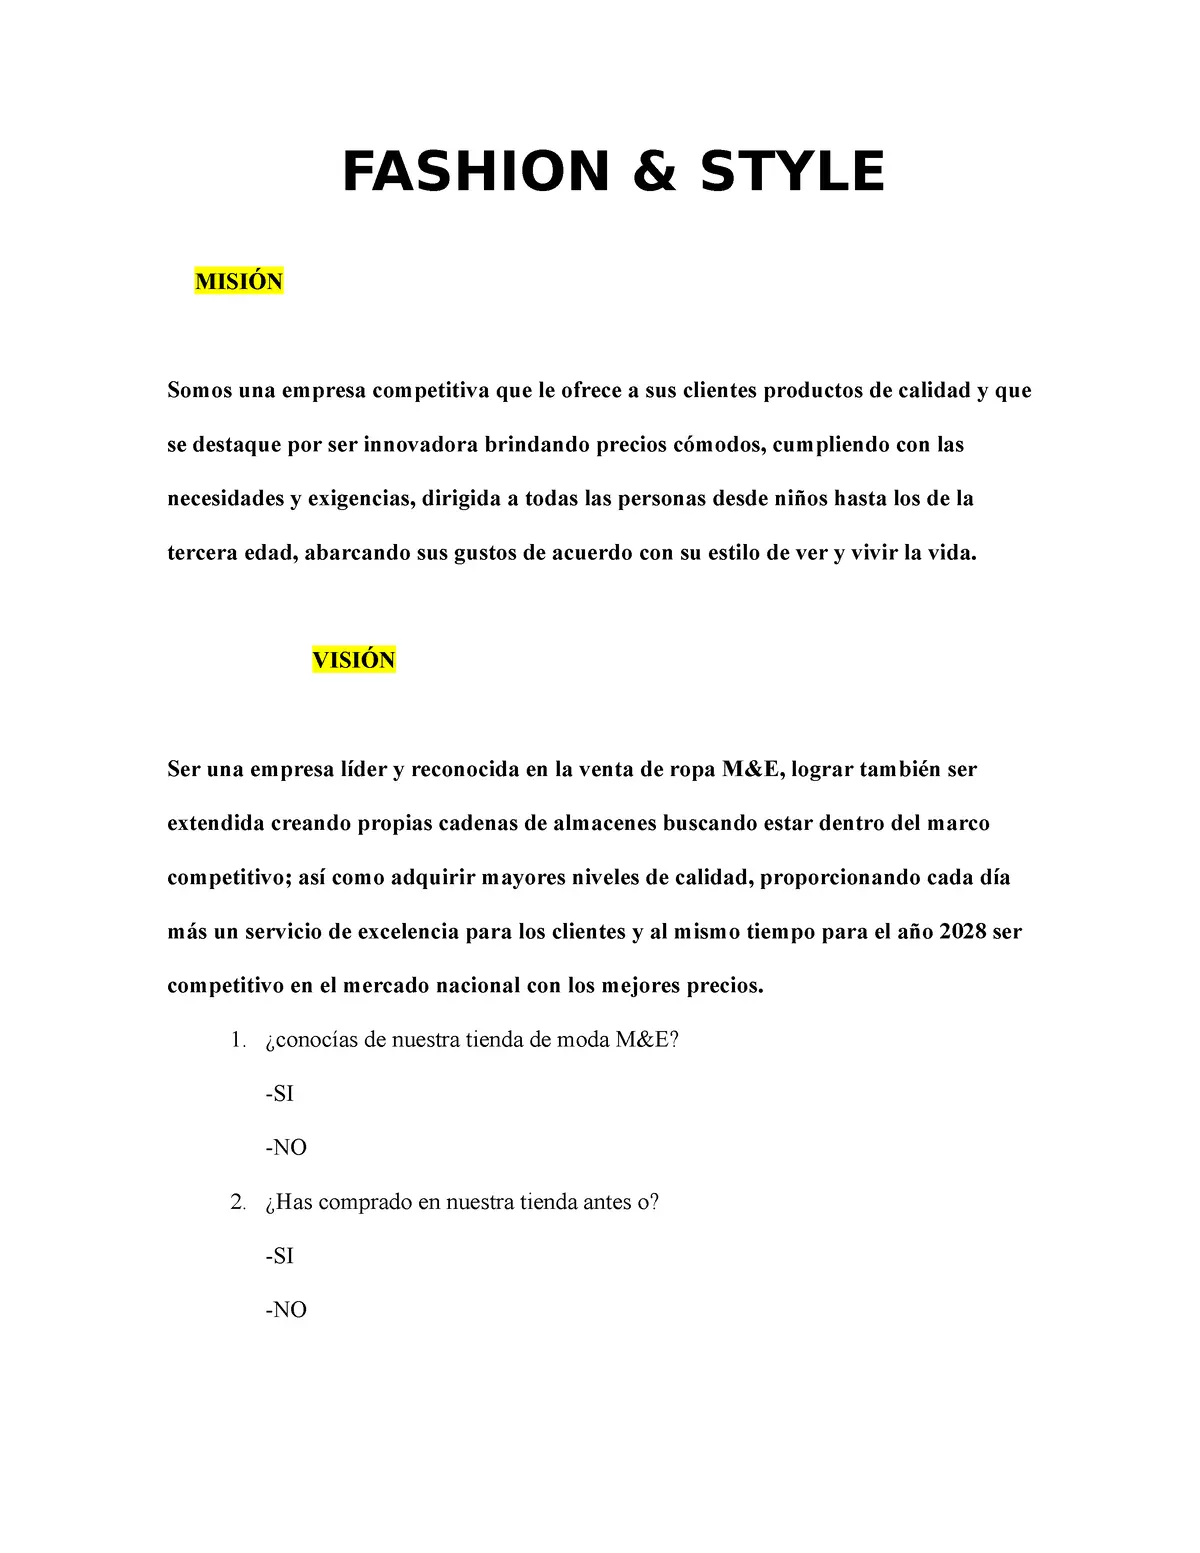 vision de una empresa de moda - Cuál es la visión de una tienda